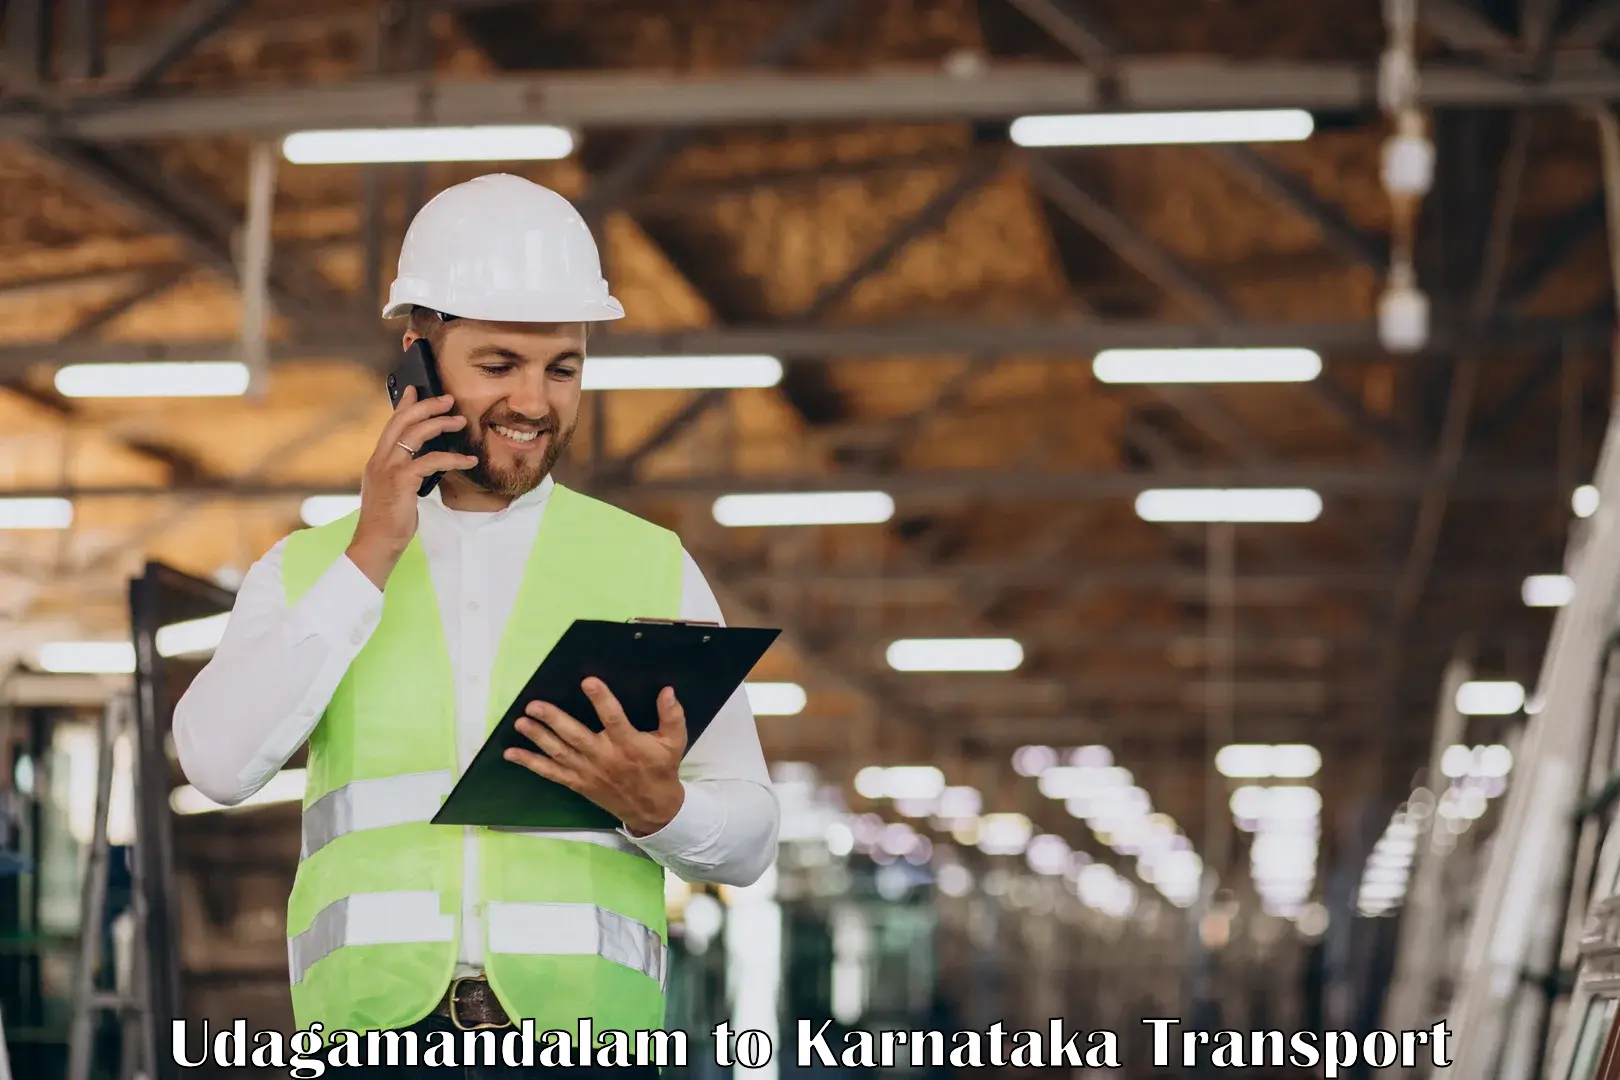 International cargo transportation services in Udagamandalam to Karnataka